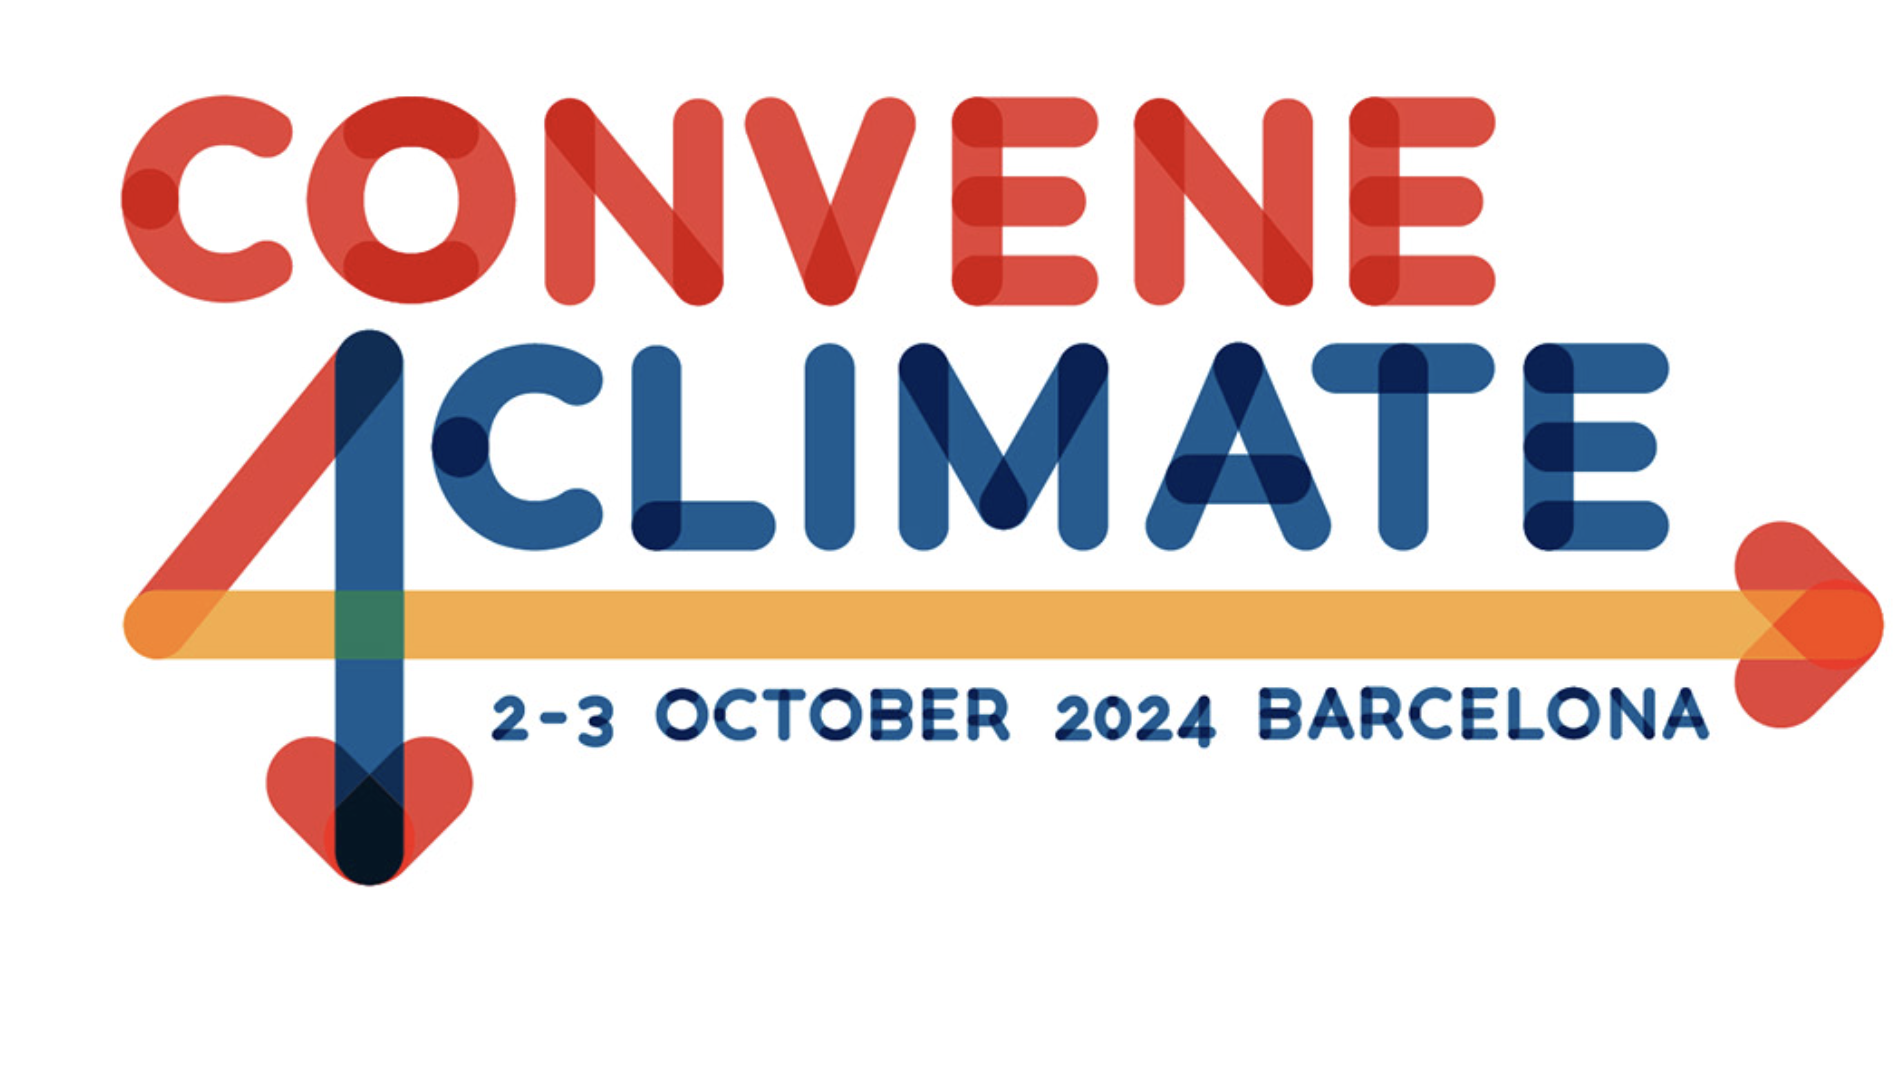 PCMA Convene 4 Climate sustainability conference logo